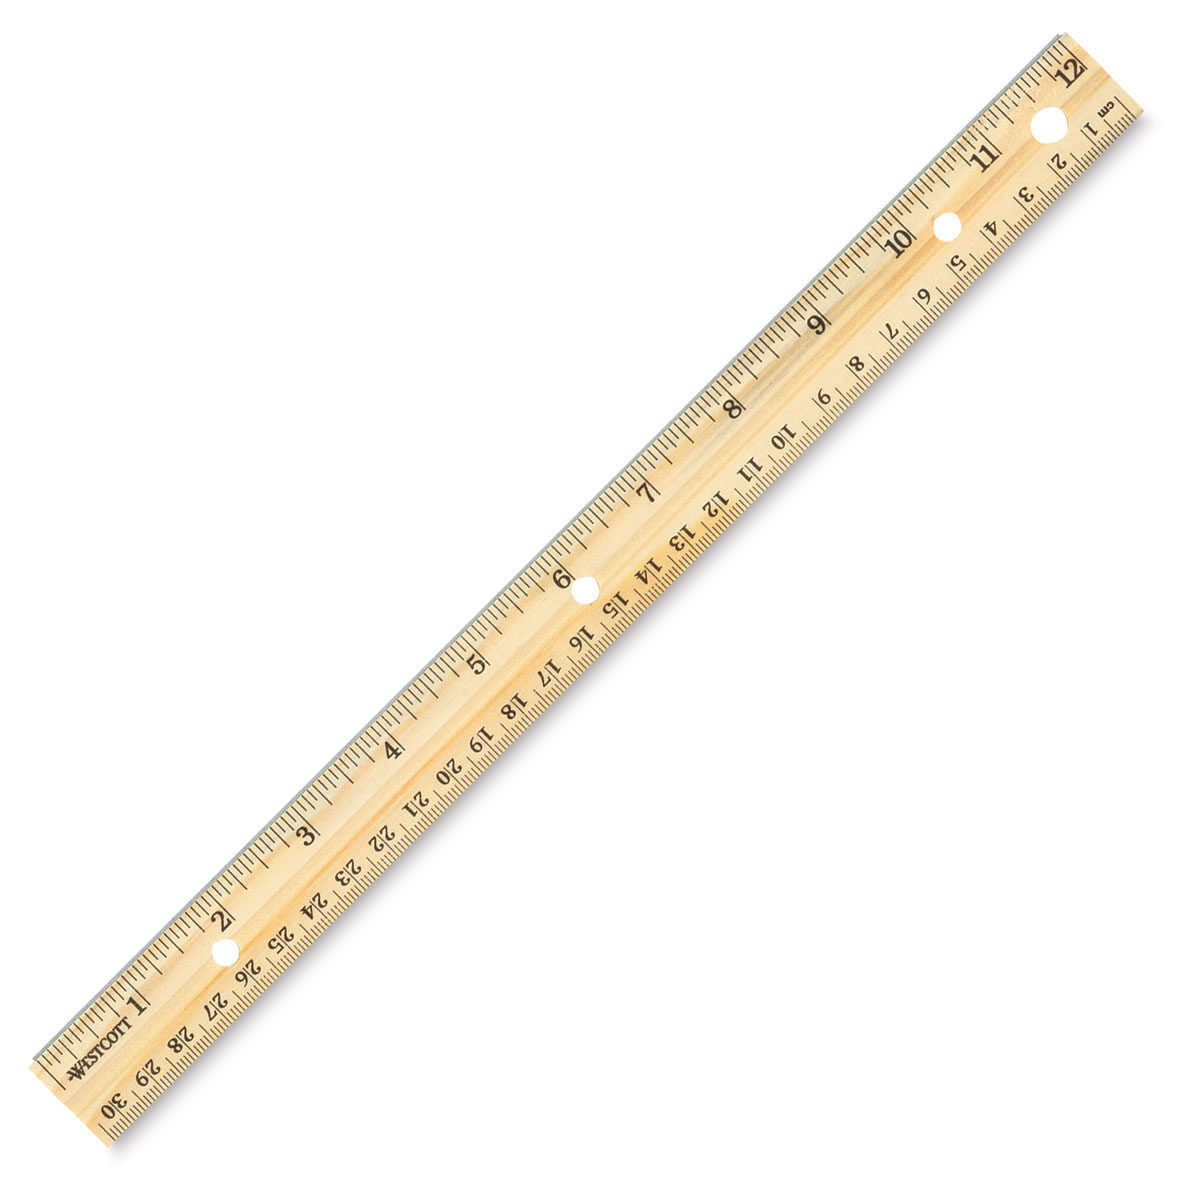 Ruler measurements